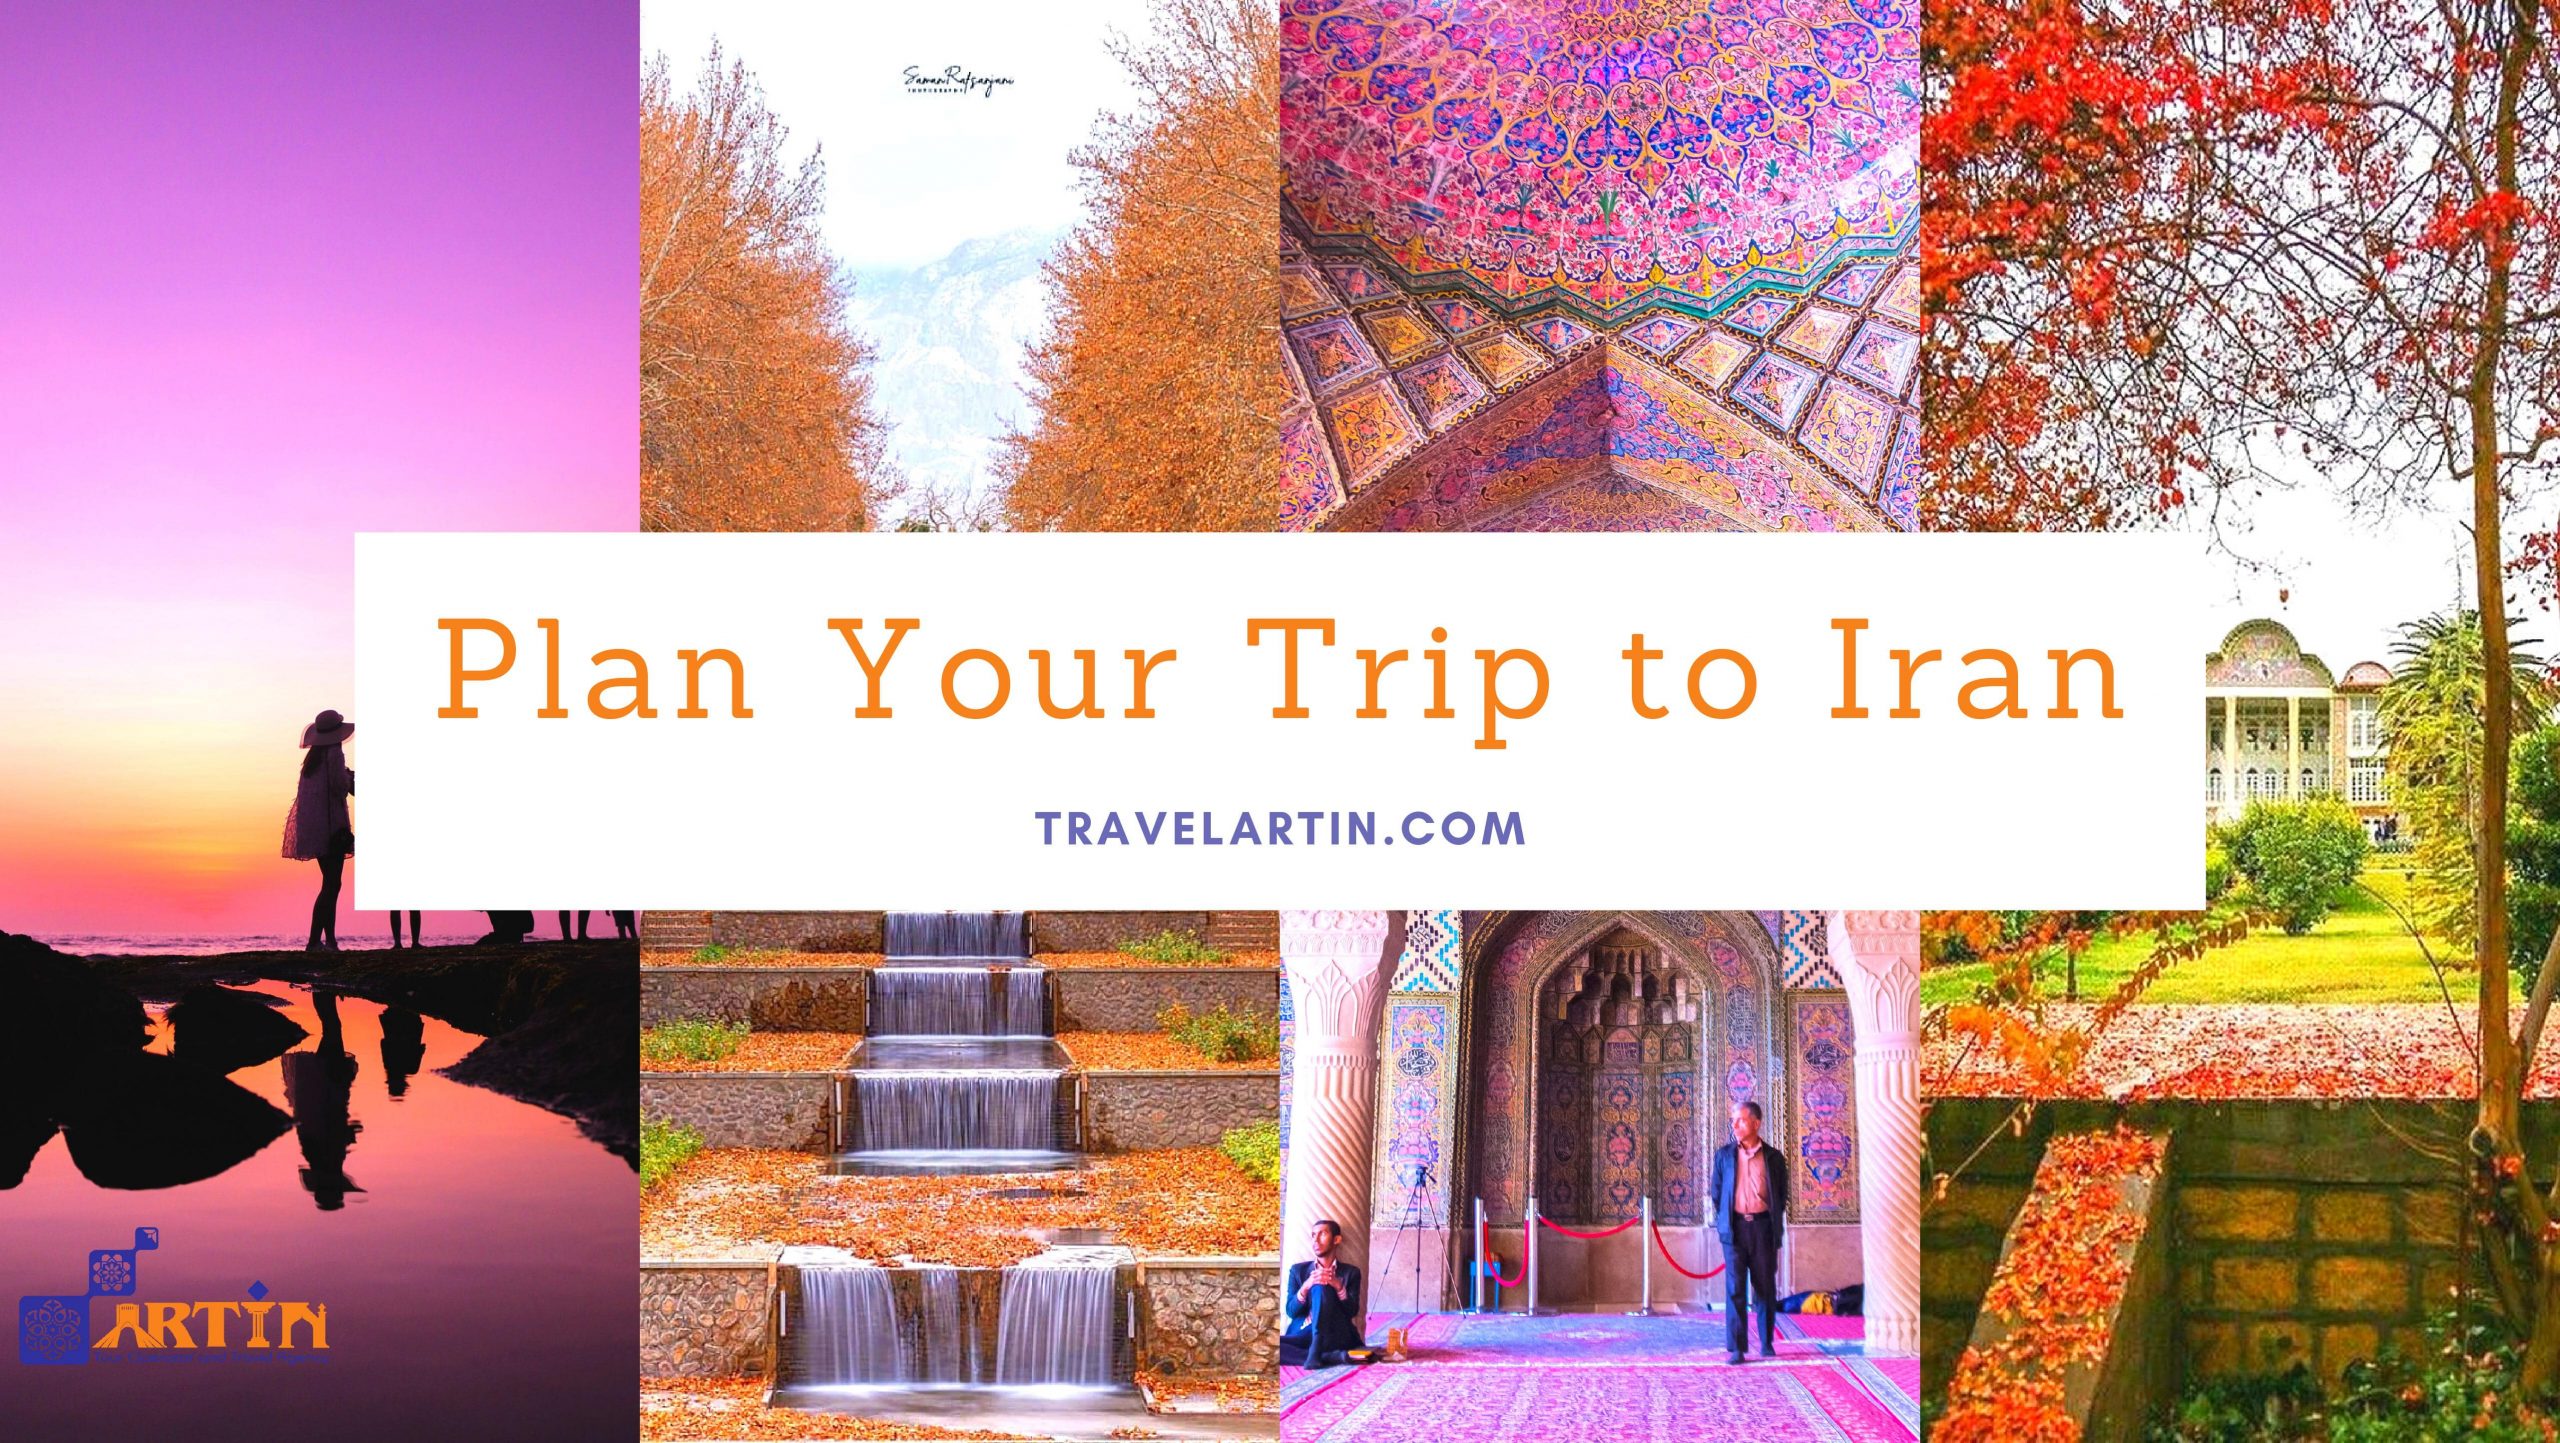 iran gov travel advice